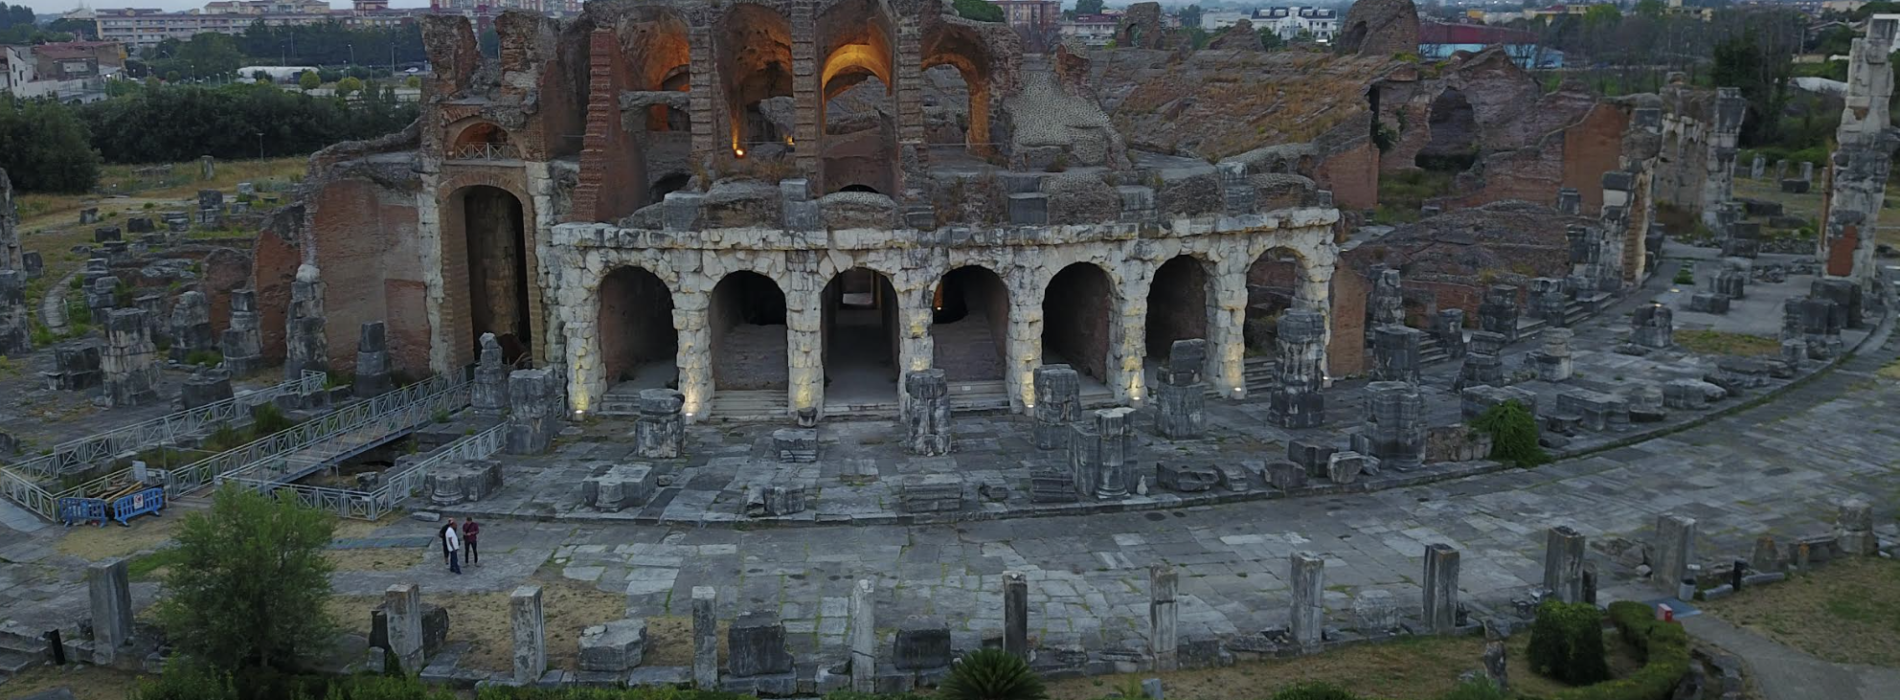 Circuito Archeologico dell’Antica Capua, nuova bigliettazione